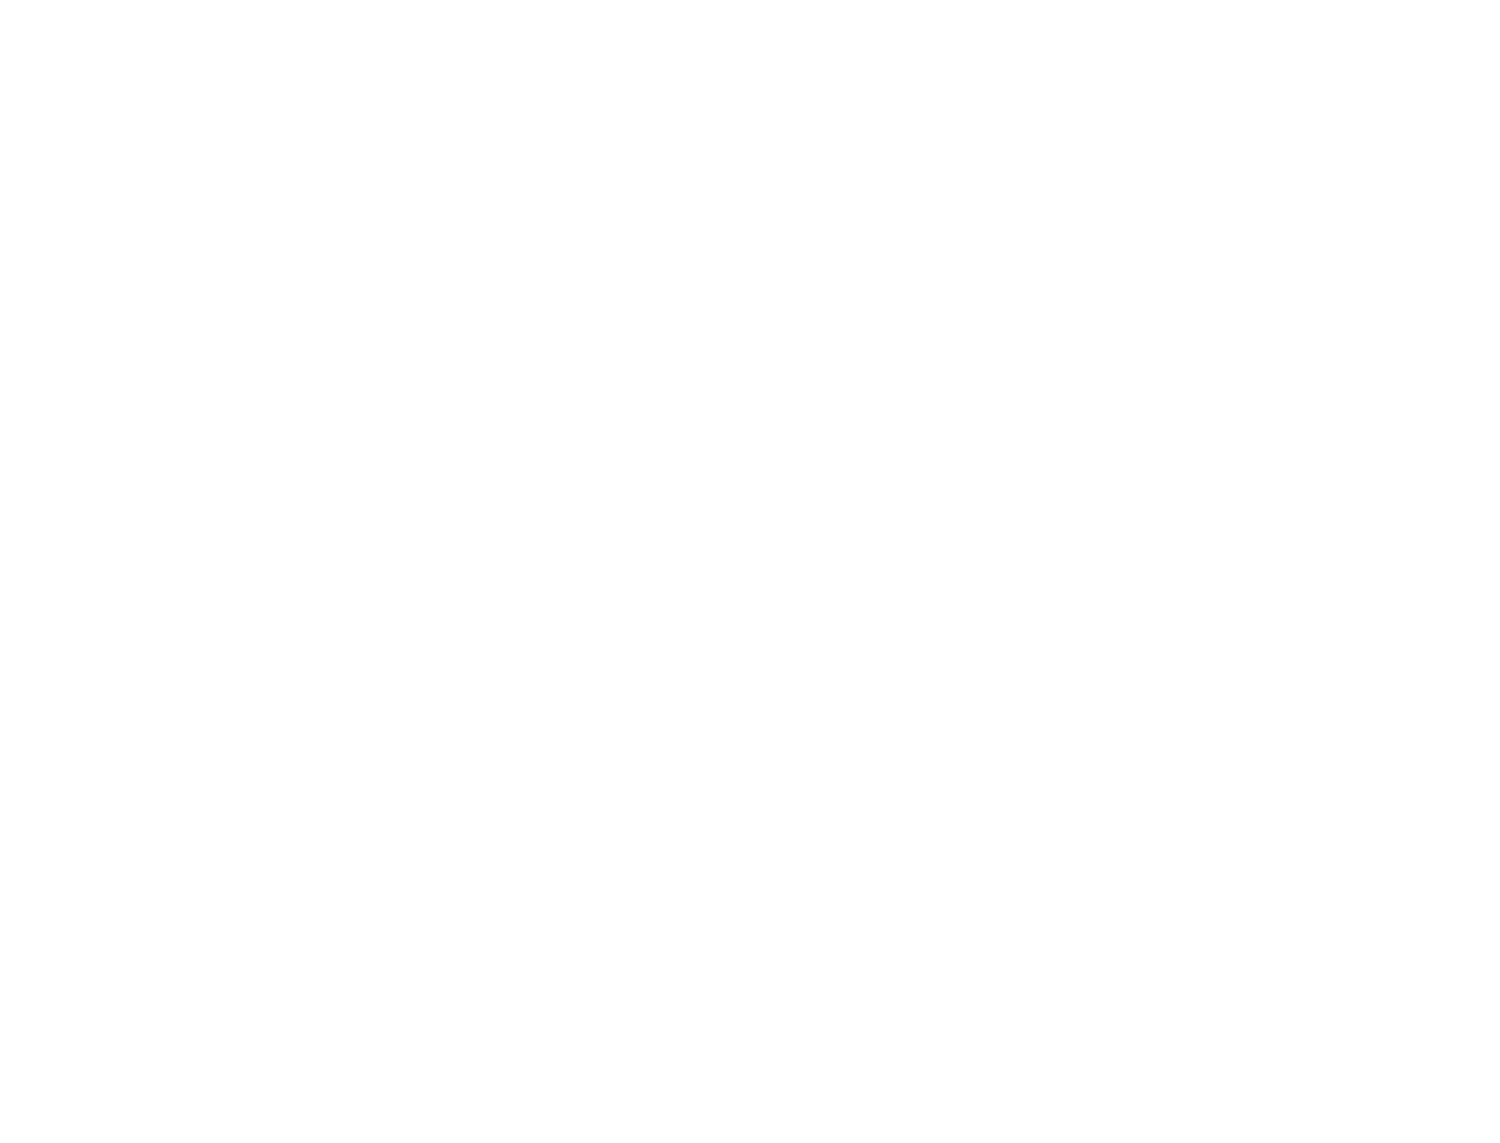 Karen Ostermeier